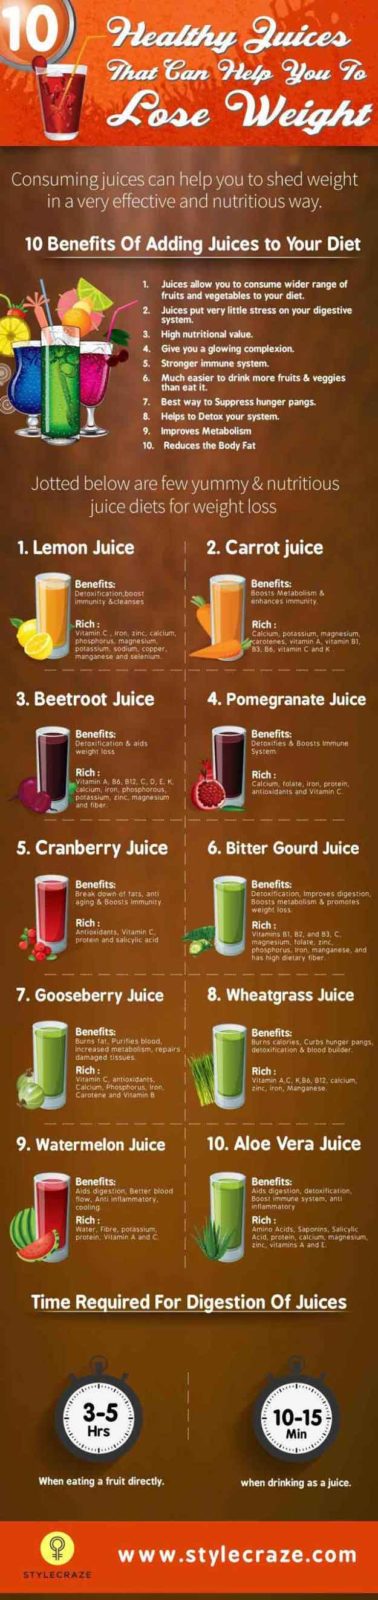 Cranberry Juice Detox Diet Plan